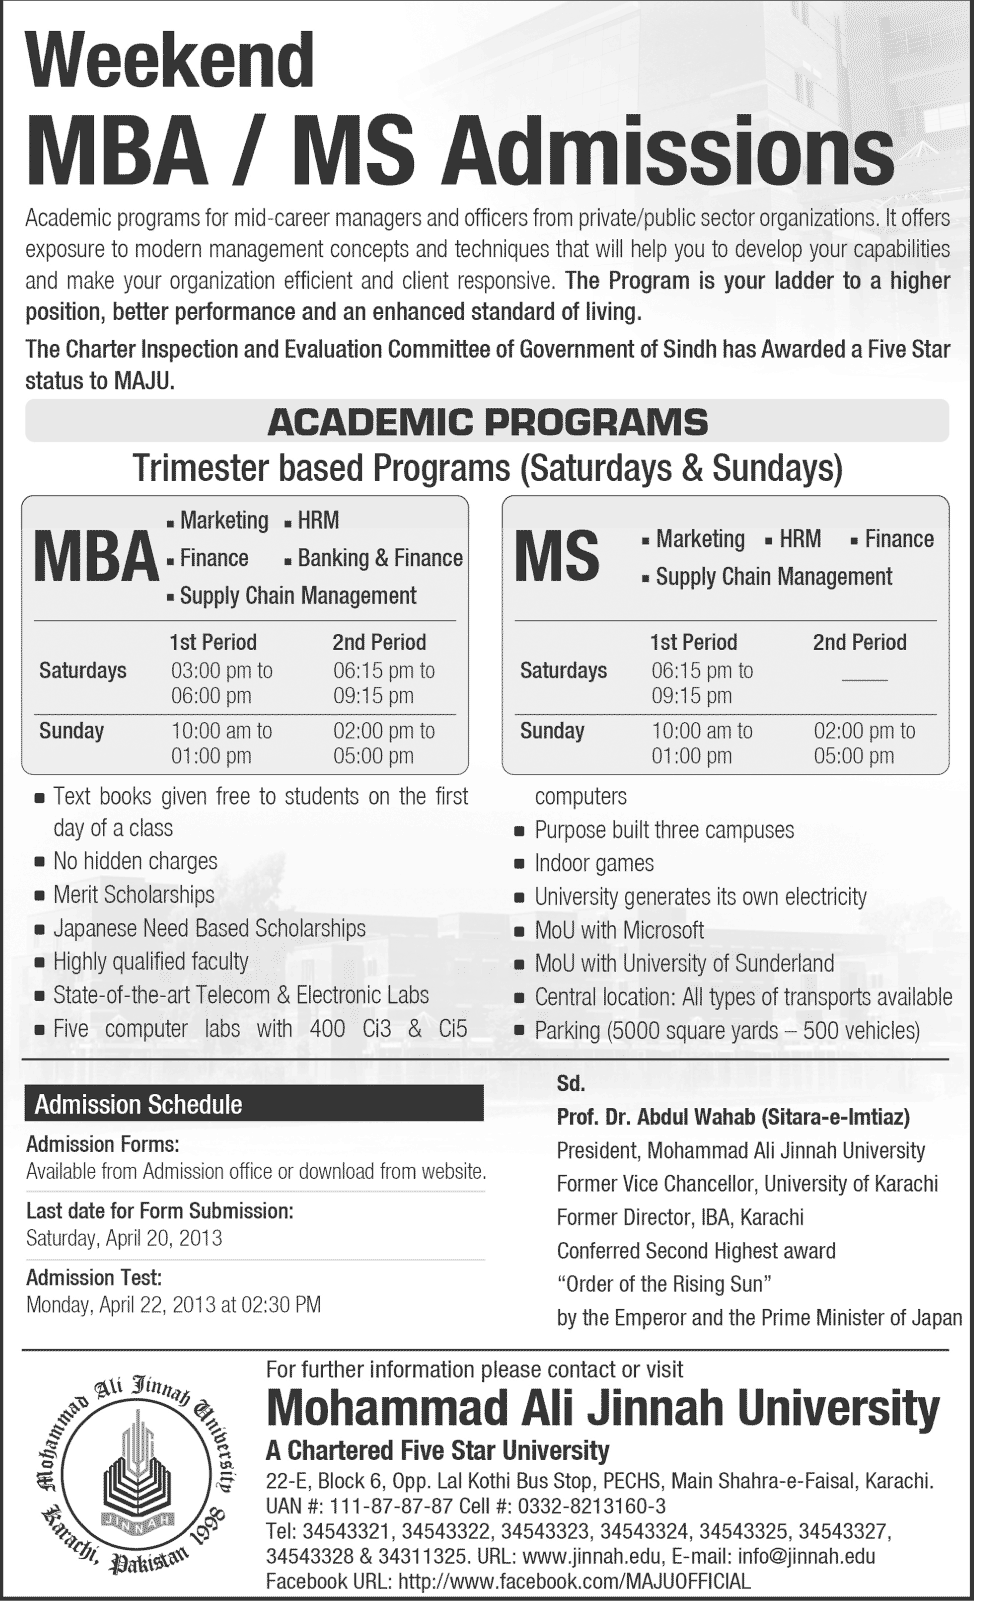 Muhammad Ali Jinnah University MBAMS Admissions 2013